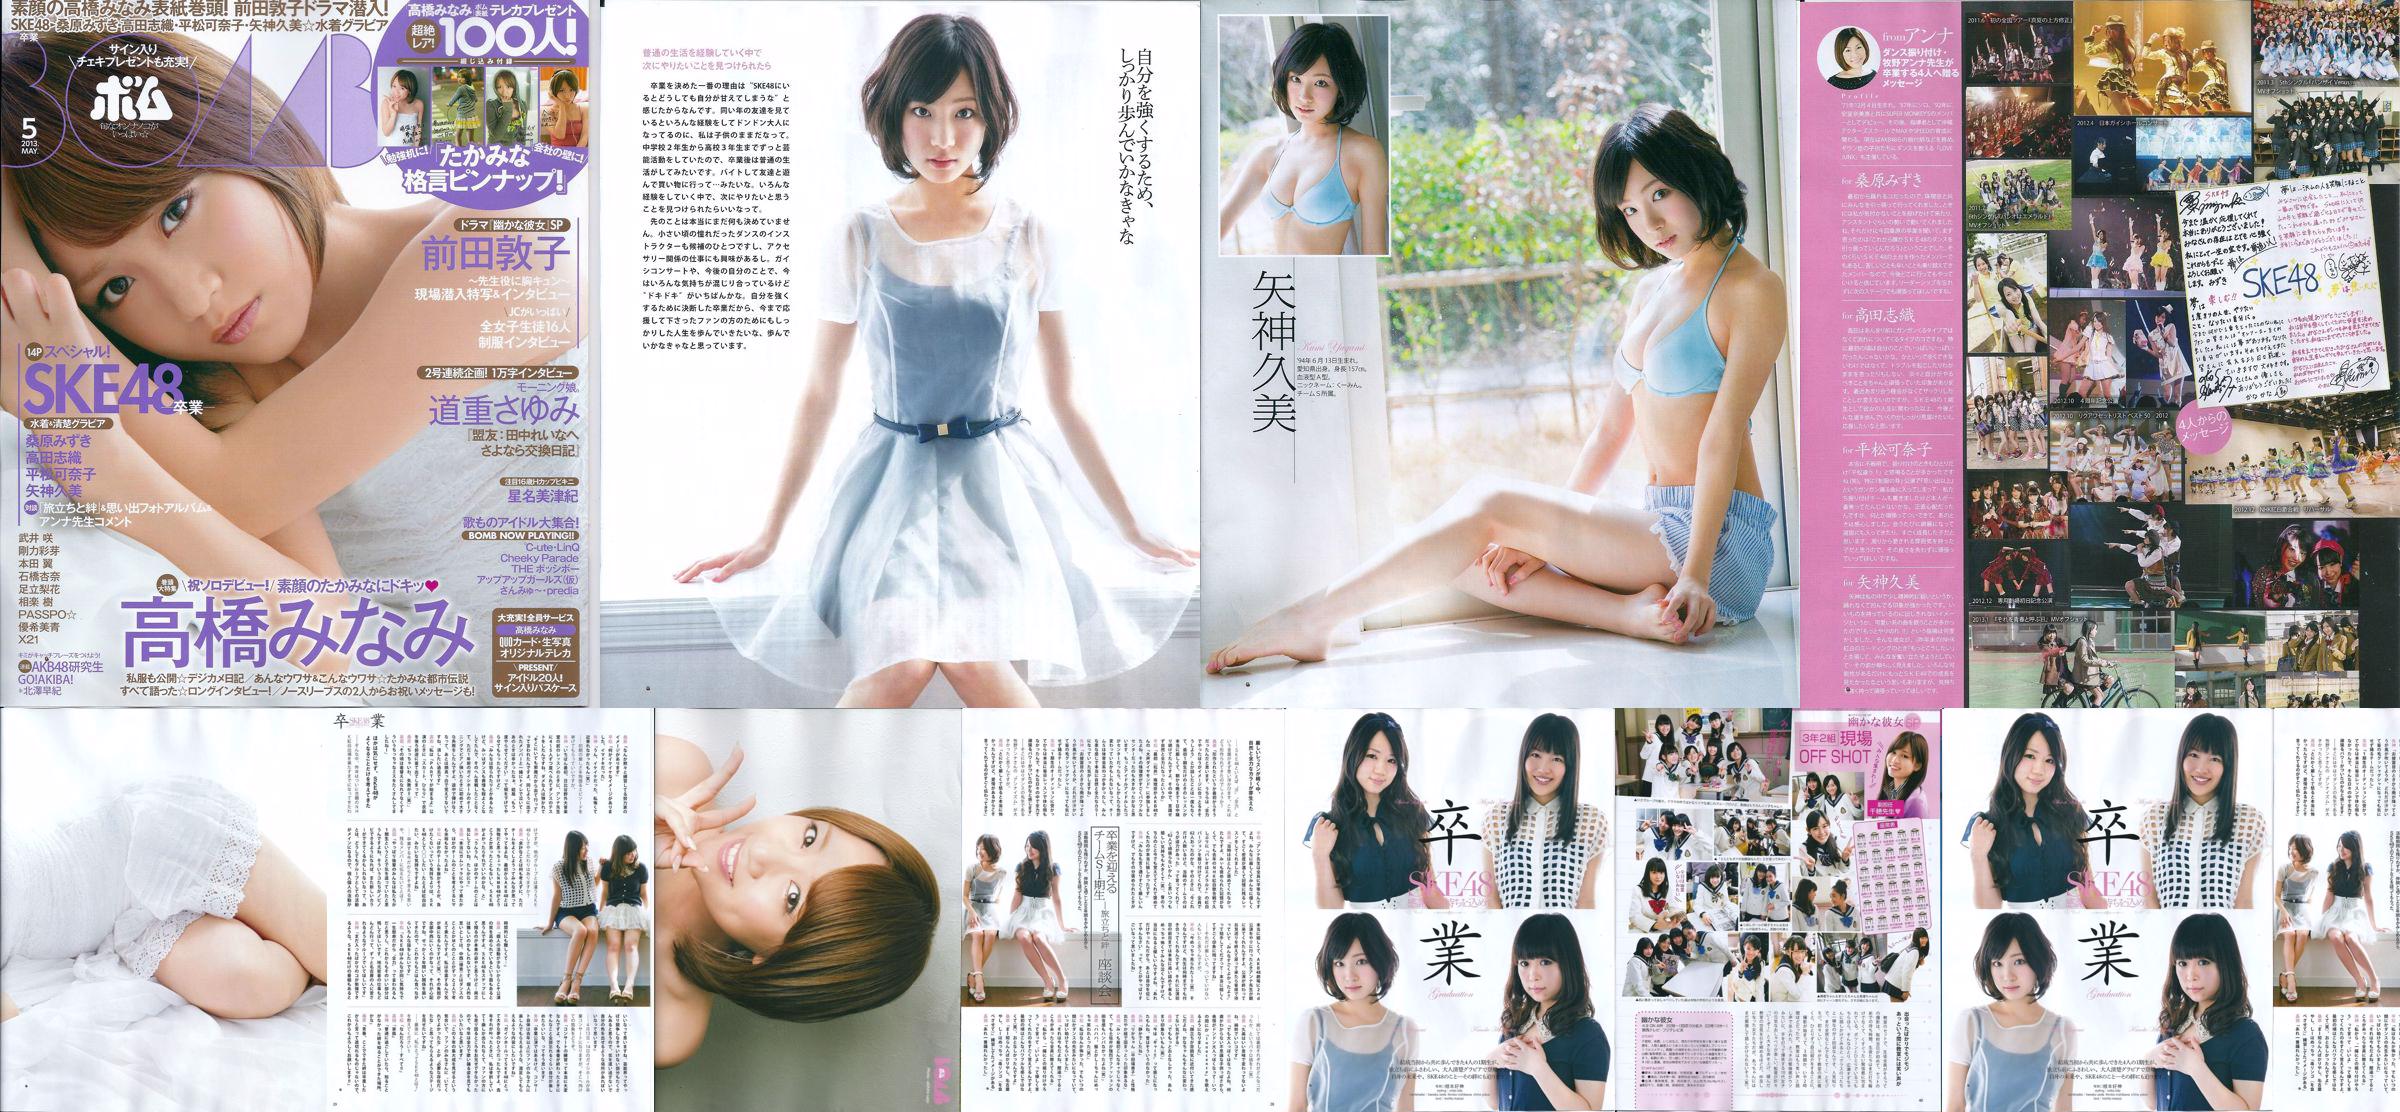 [Bomb Magazine] 2013 No.05 Kumi Yagami Minami Takahashi Atsuko Maeda Foto No.8180be Pagina 5